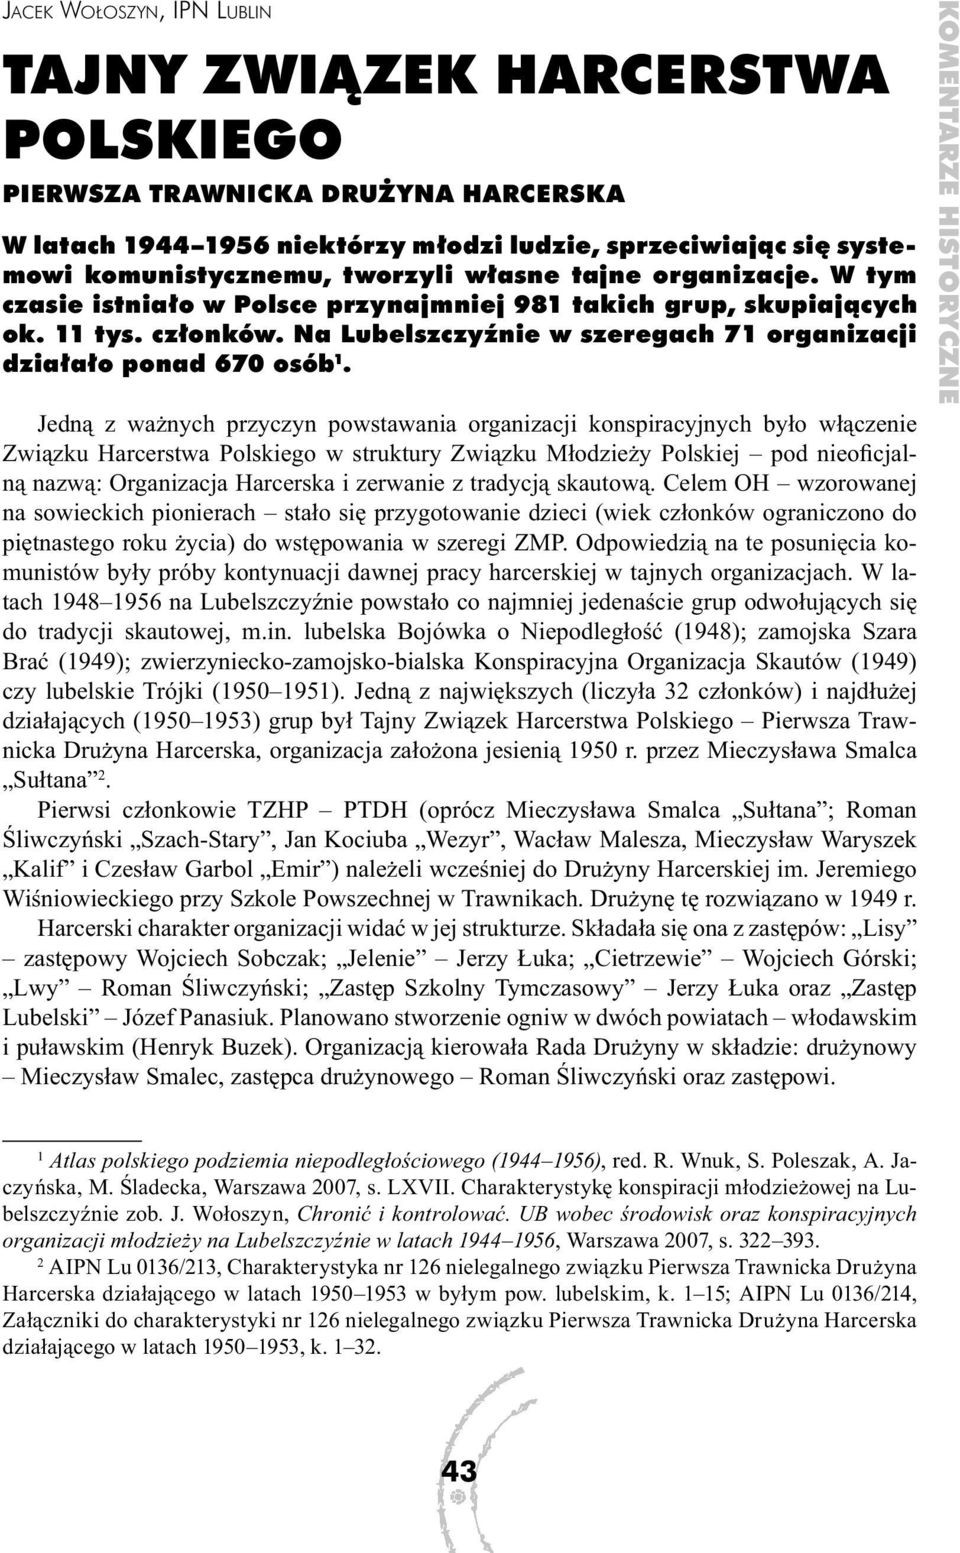 Jedną z ważnych przyczyn powstawania organizacji konspiracyjnych było włączenie Związku Harcerstwa Polskiego w struktury Związku Młodzieży Polskiej pod nieoficjalną nazwą: Organizacja Harcerska i